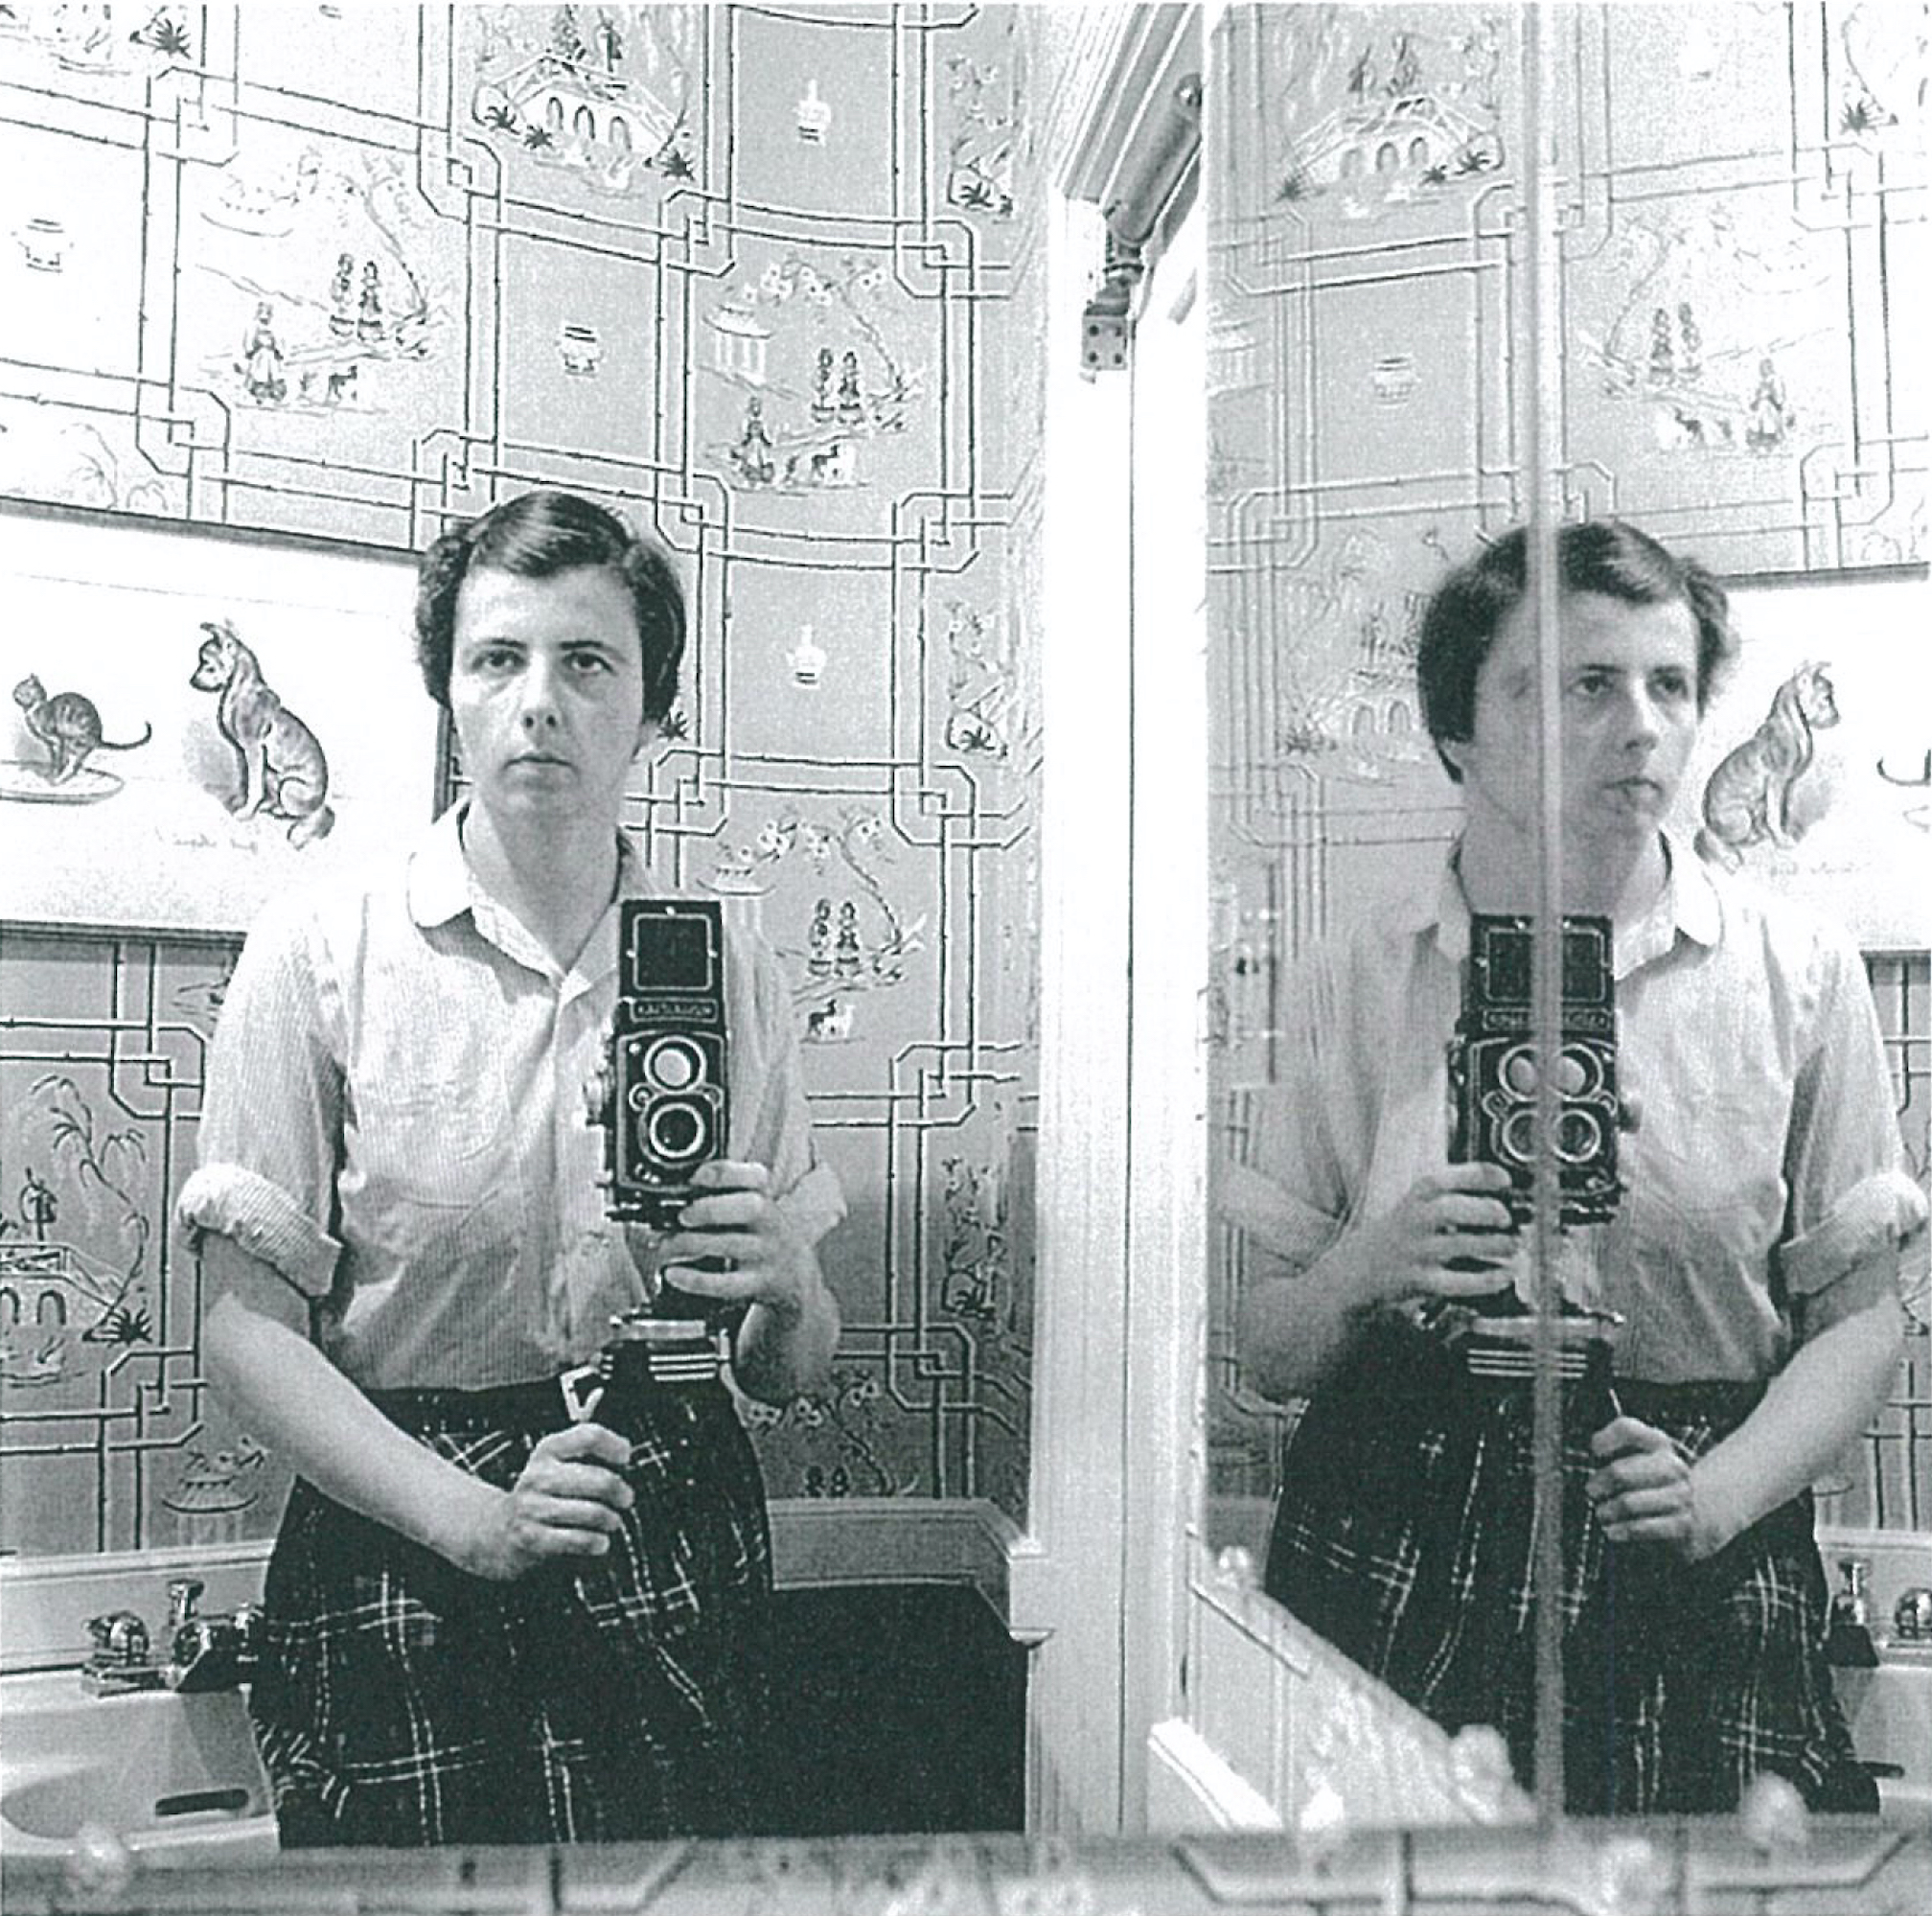 ヴィヴィアン・マイヤー「Self portraits」（1950年代ー1970年代）